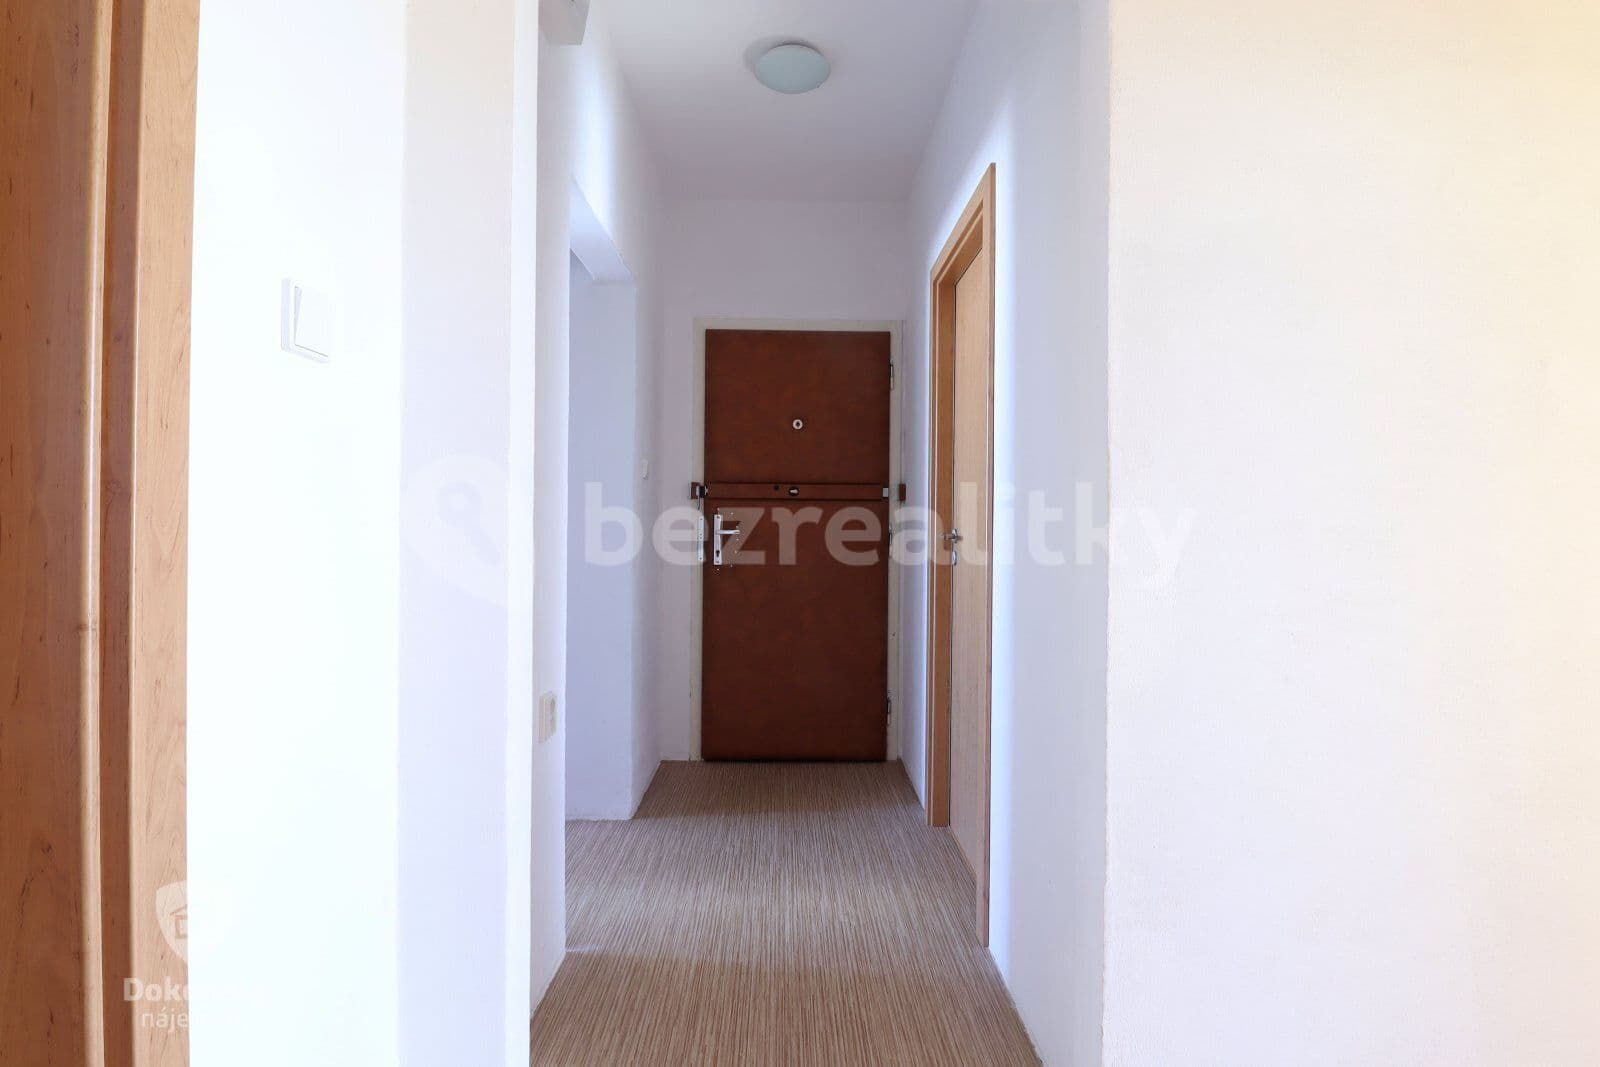 3 bedroom flat to rent, 72 m², Brodského, Prague, Prague